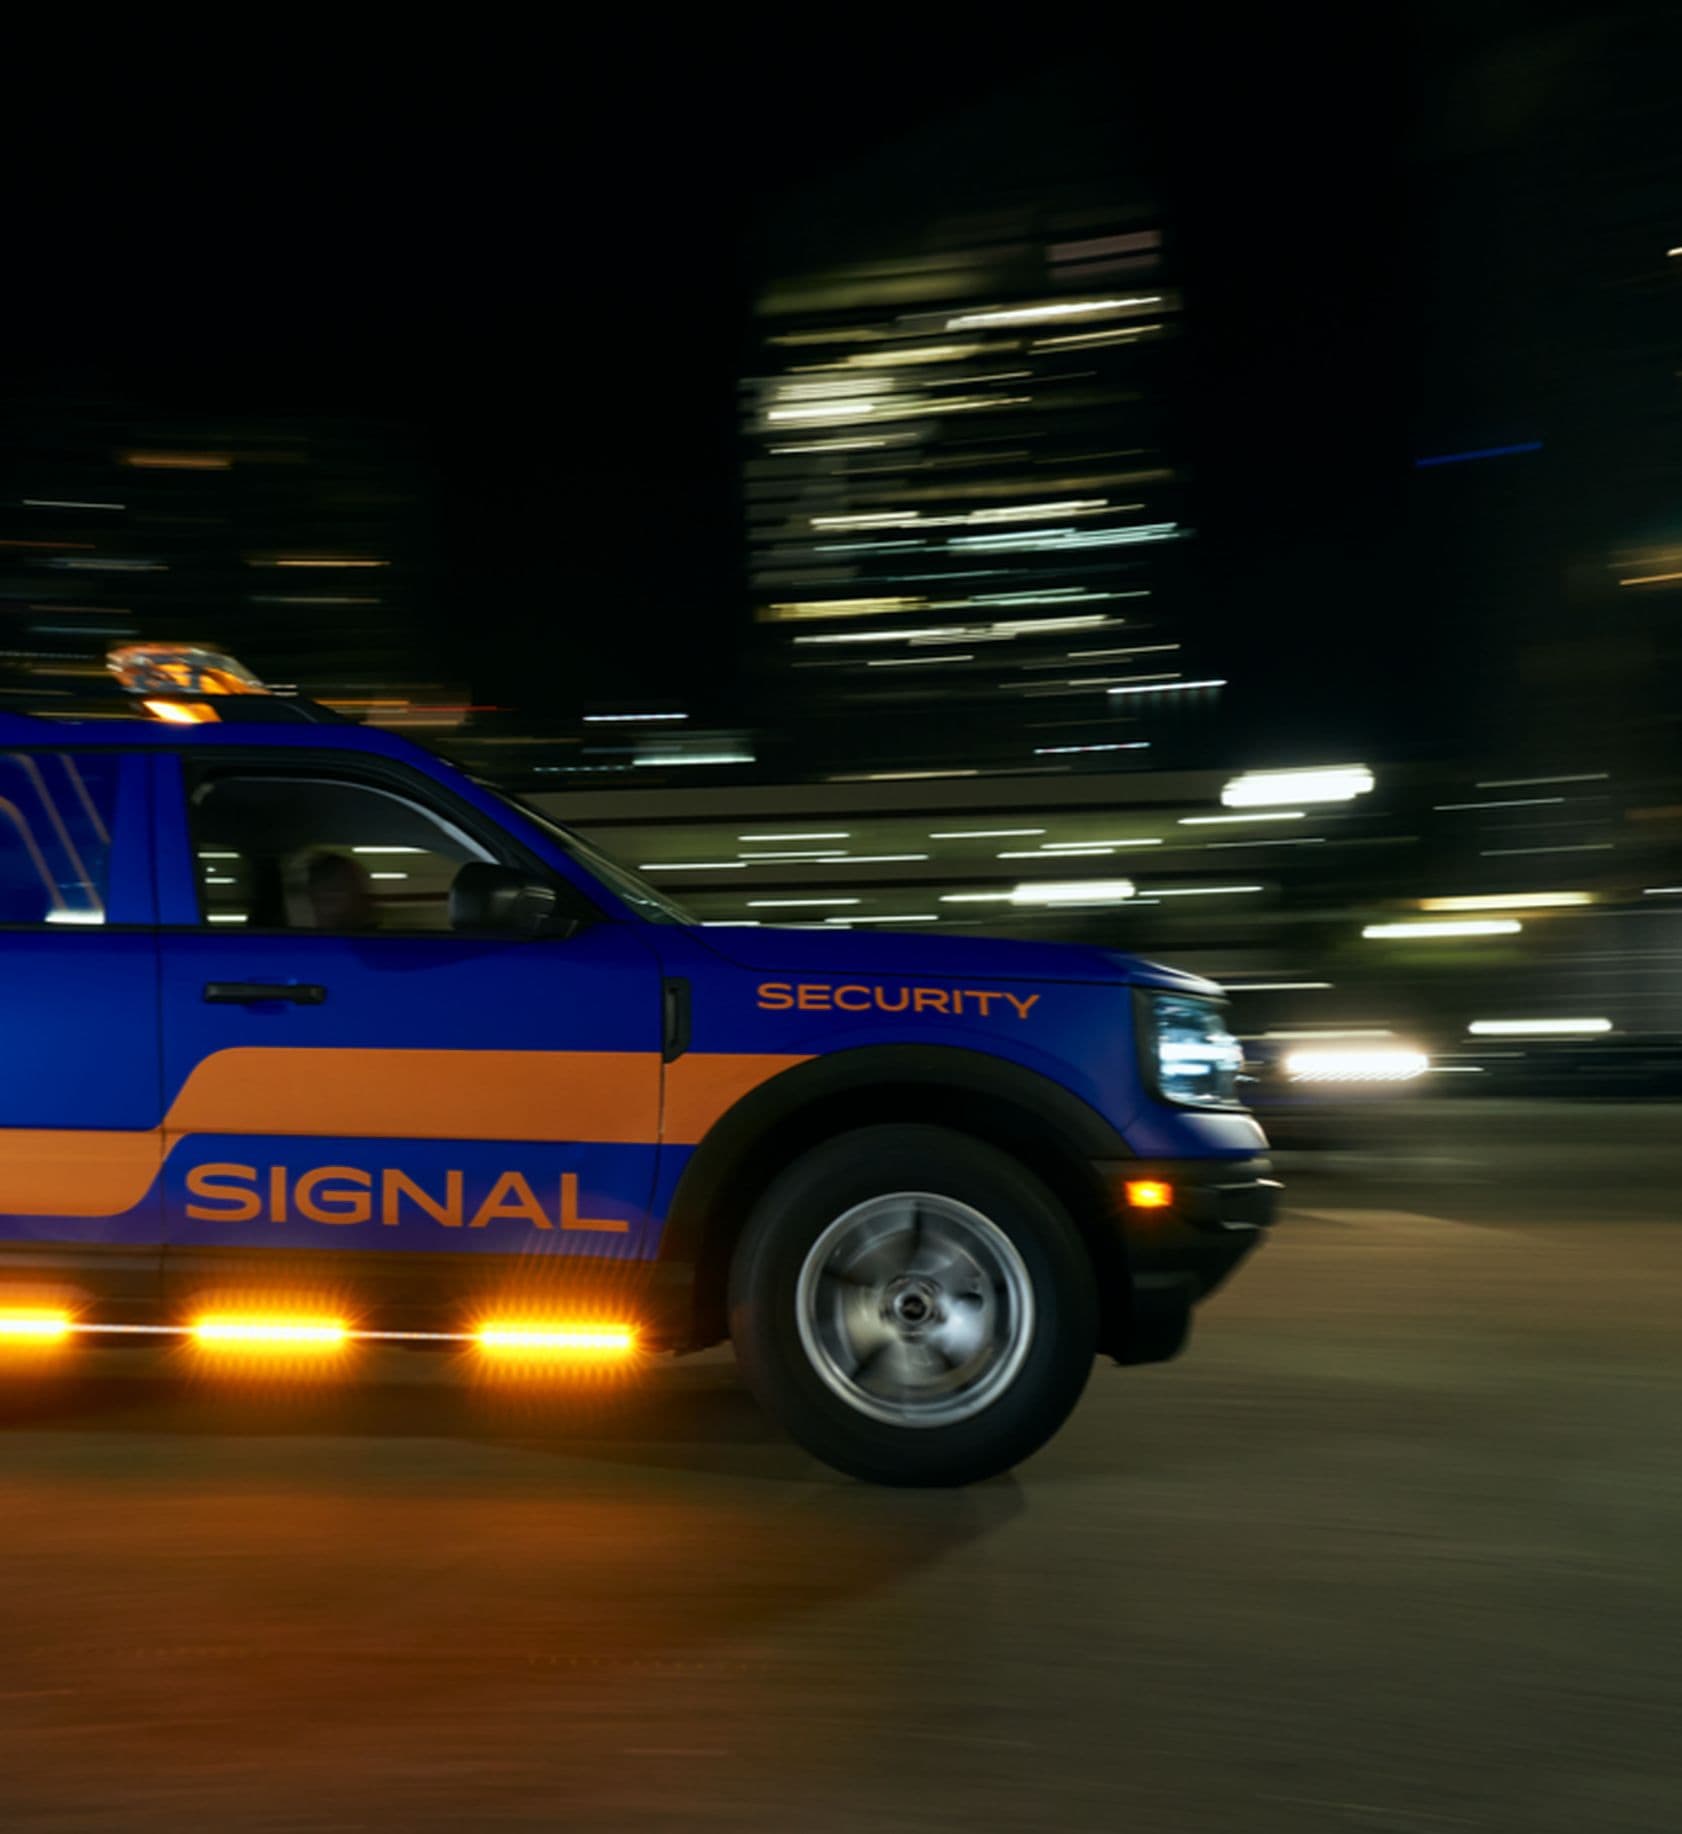 Signal patrol vehicle driving at night